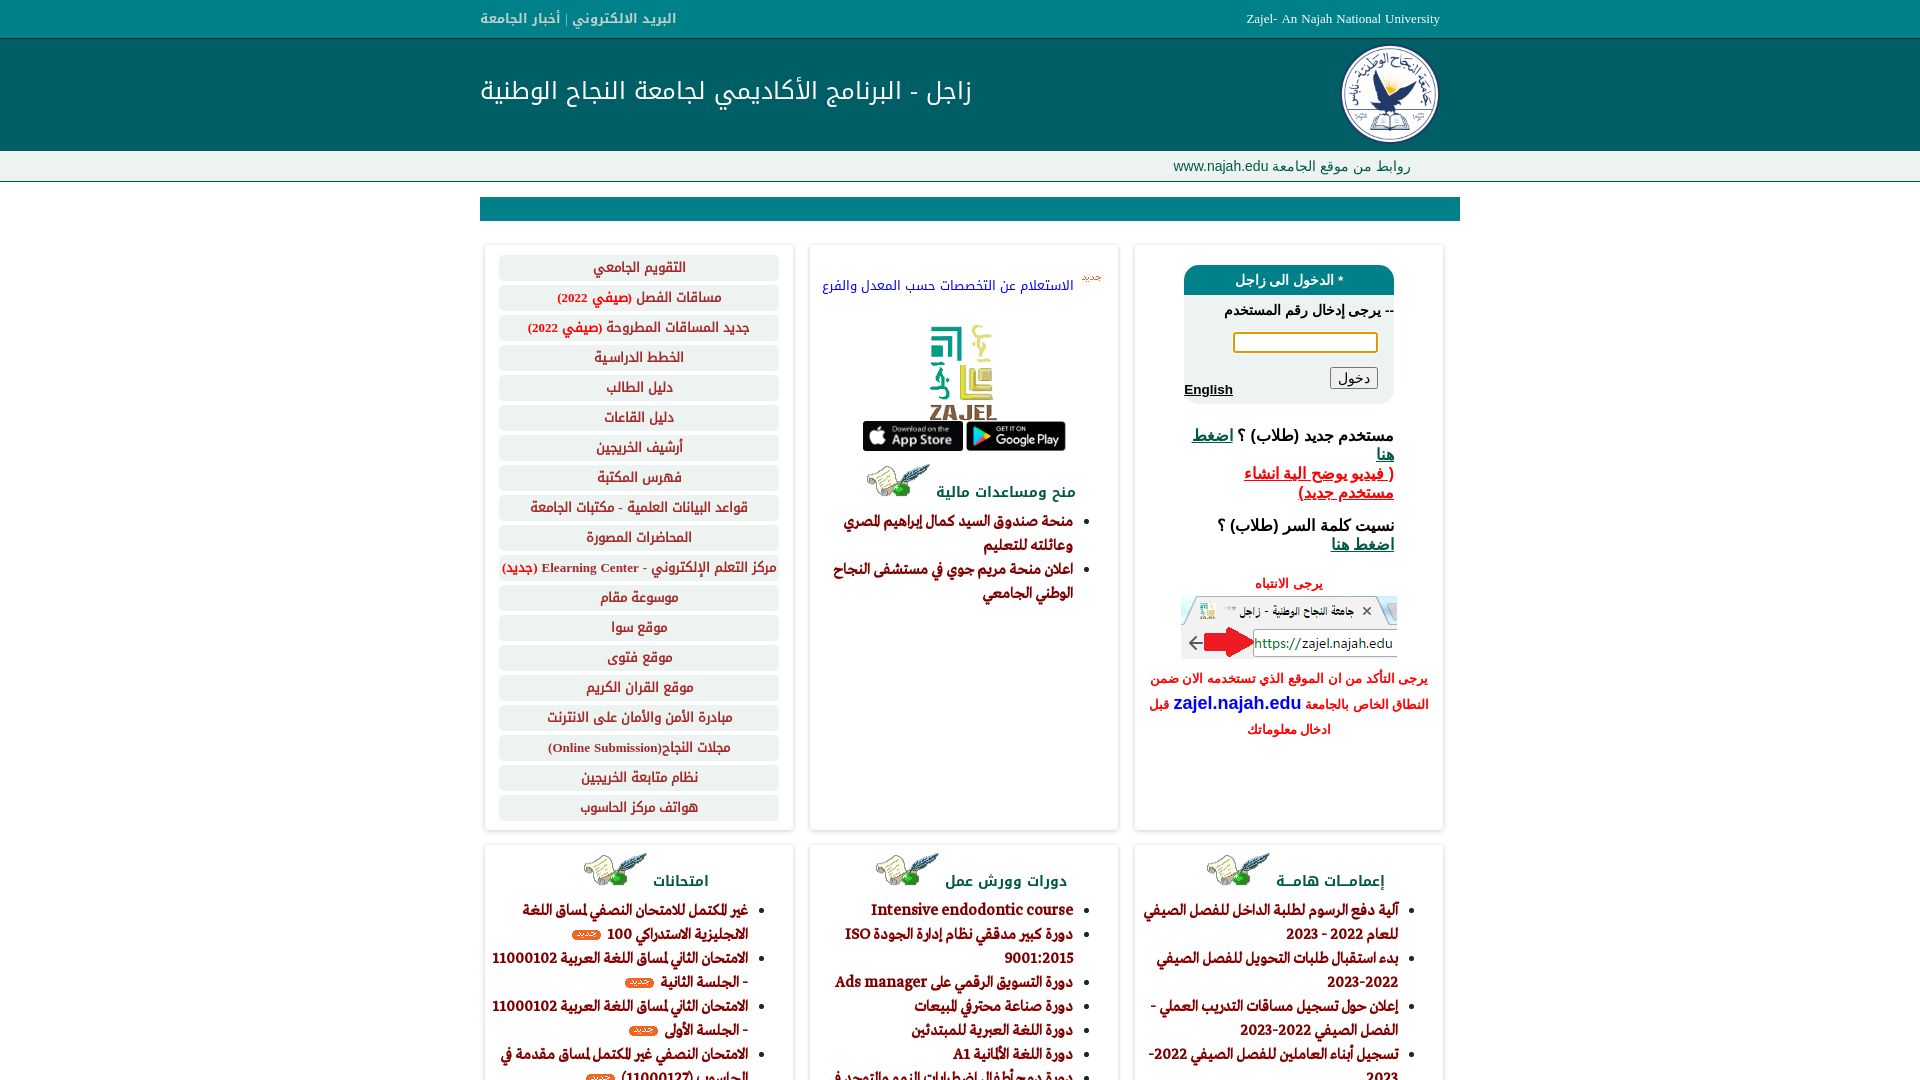 Stato del sito web zajel.najah.edu è   ONLINE